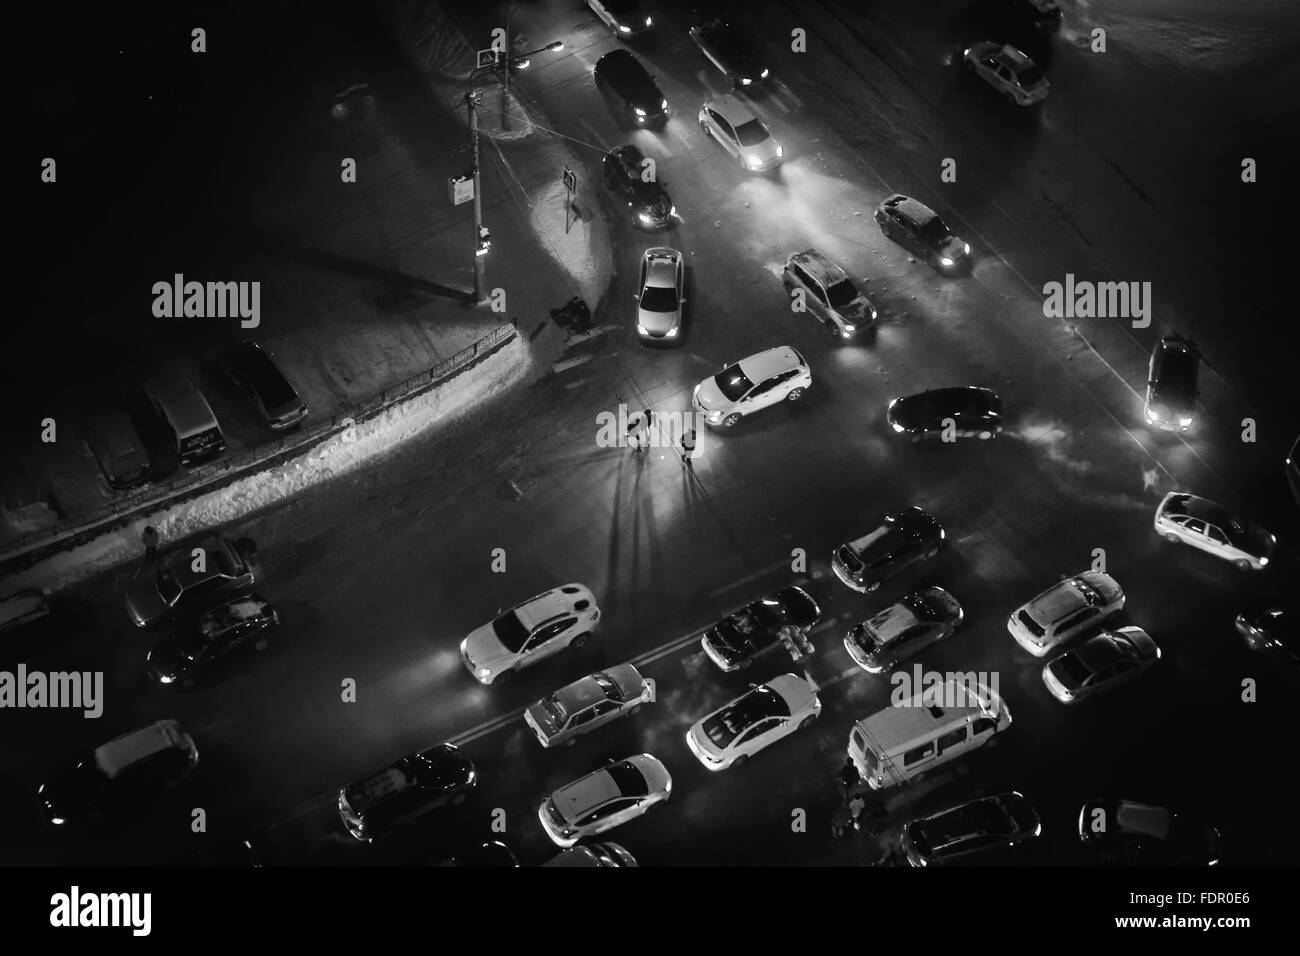 La gente di notte a piedi attraverso un passaggio pedonale in una città frenetica di traffico. Immagine monocromatica in bianco e nero. Copia dello spazio. Foto Stock